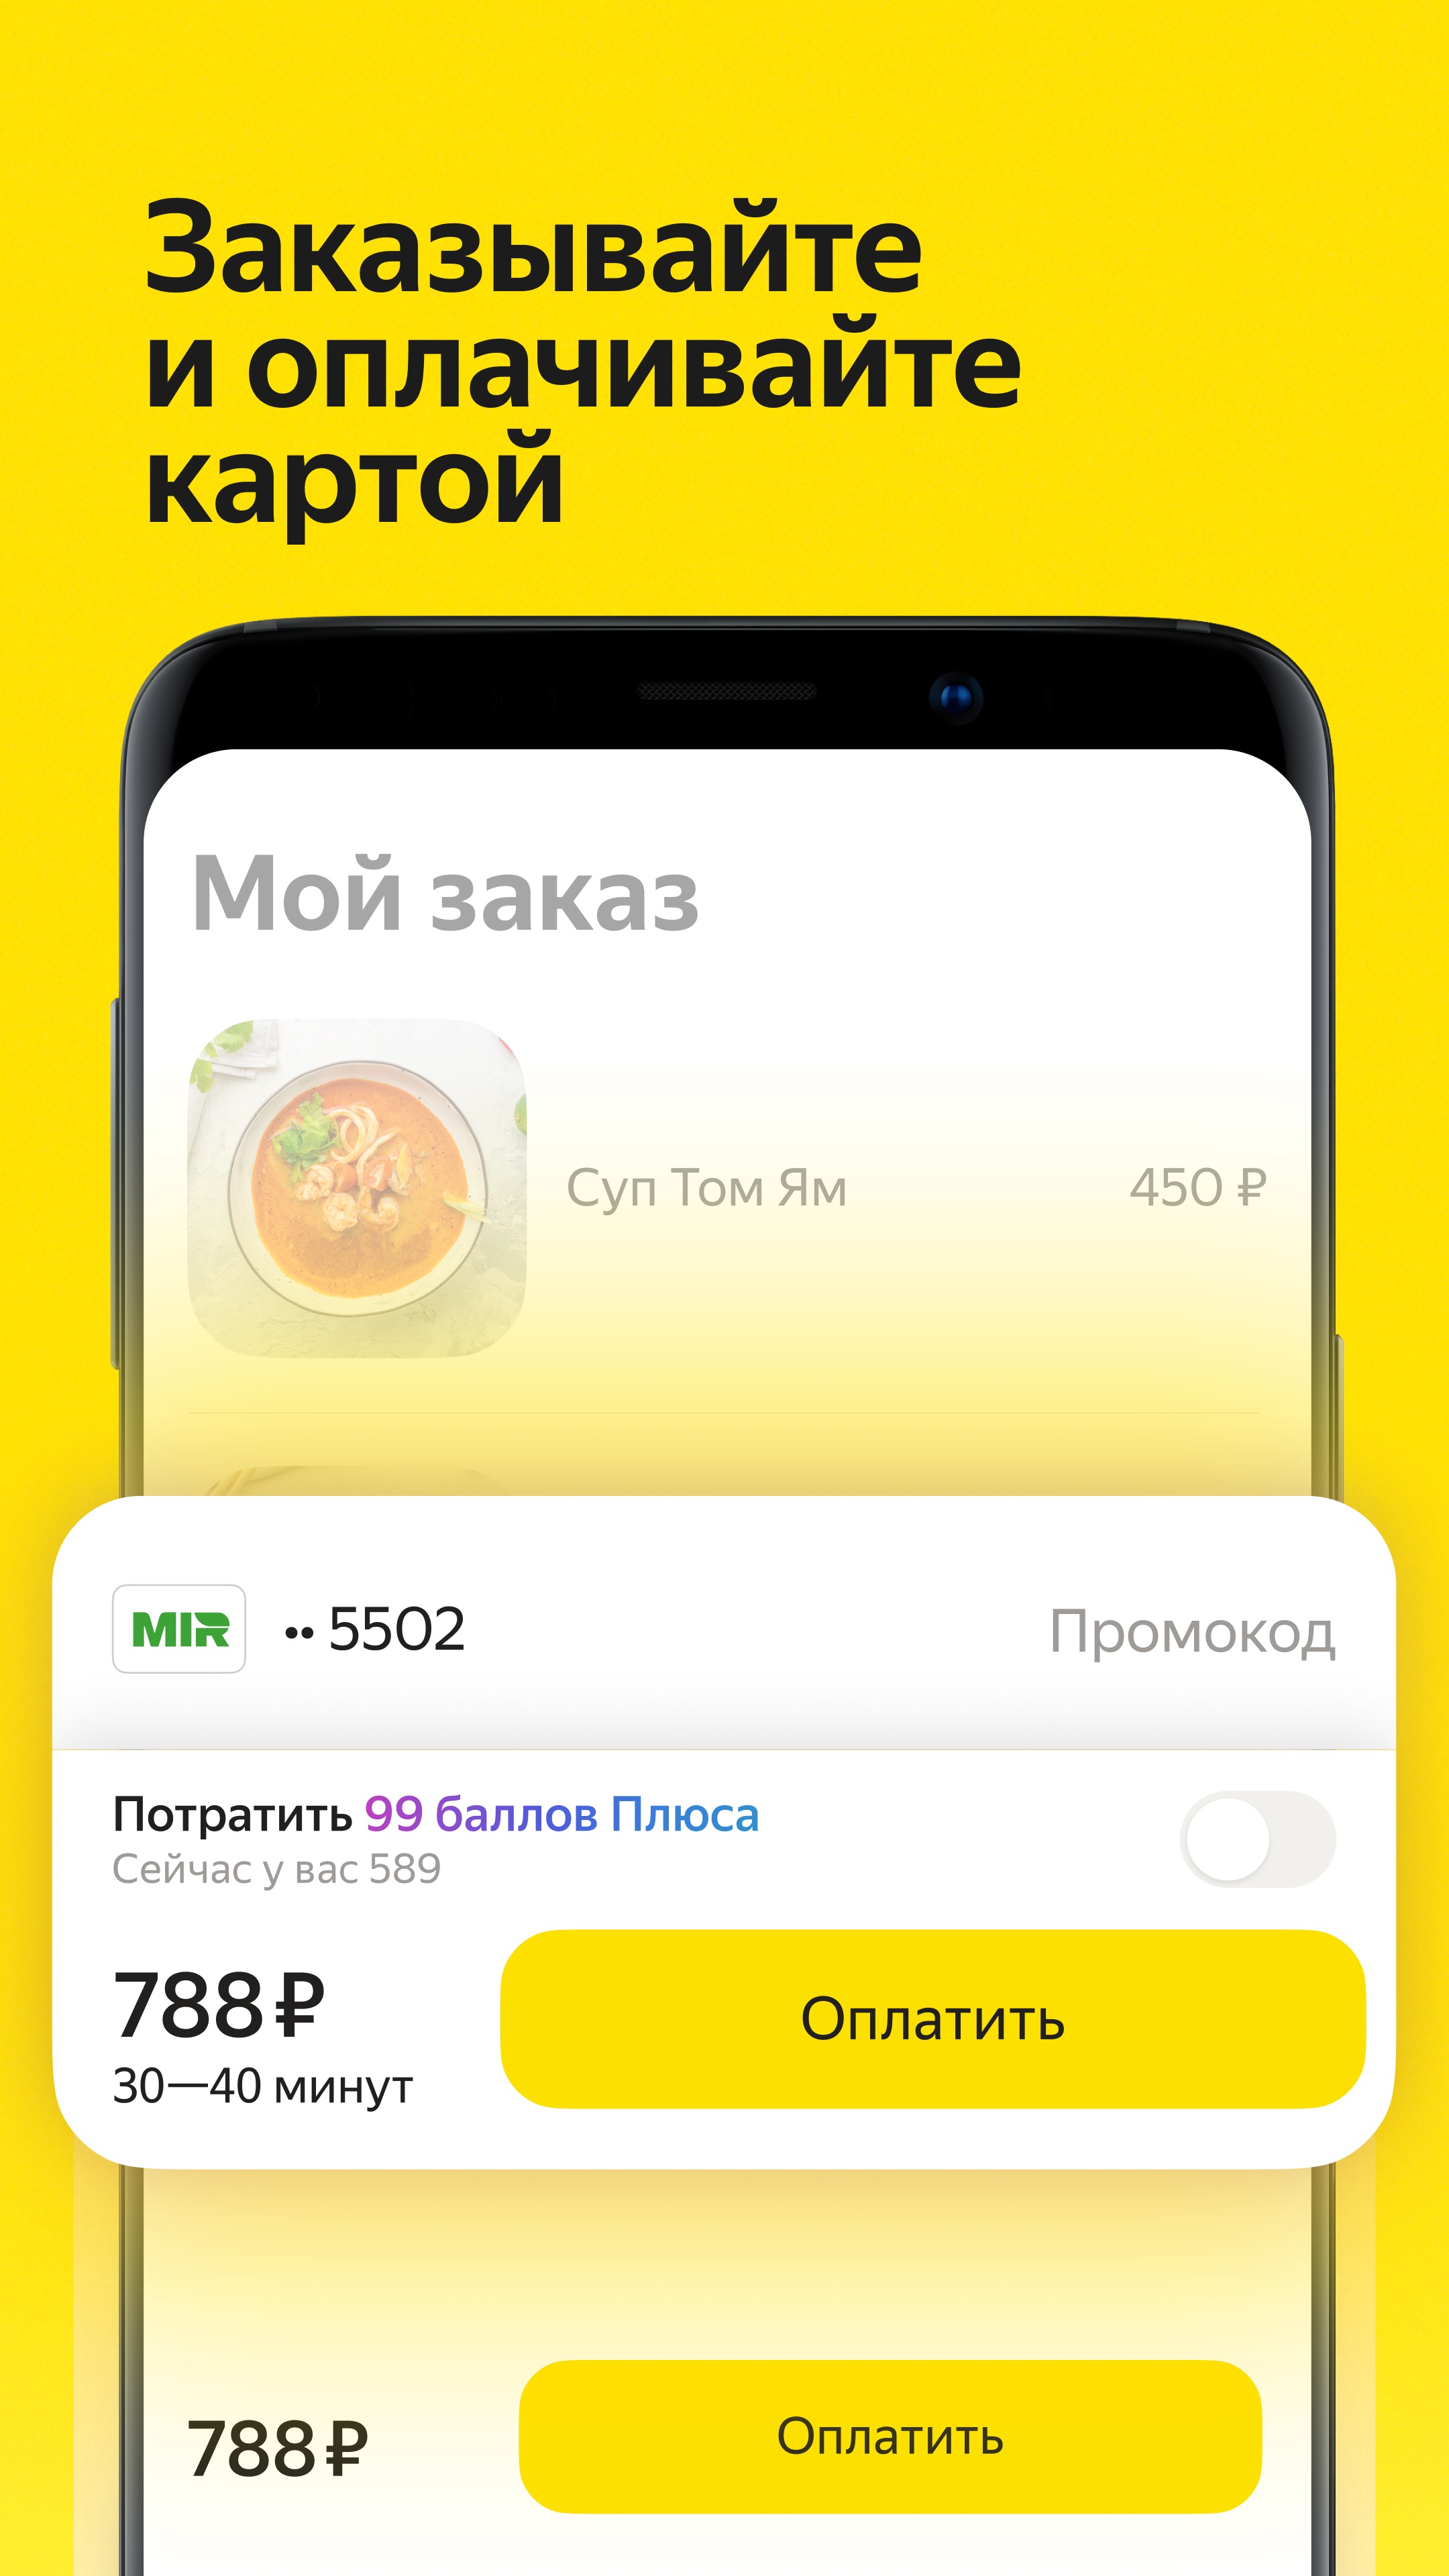 Изображение: Яндекс Еда: доставка еды